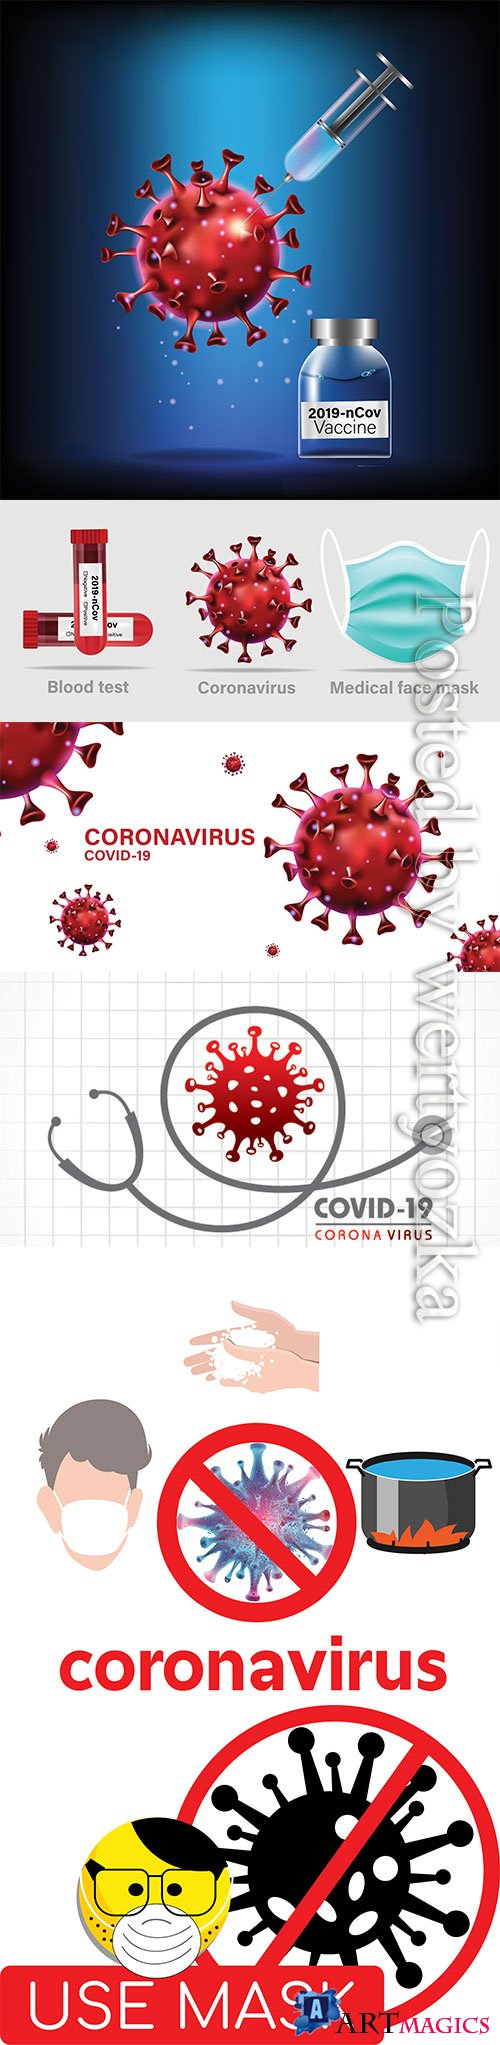 Concept for Covid-19 Corona virus